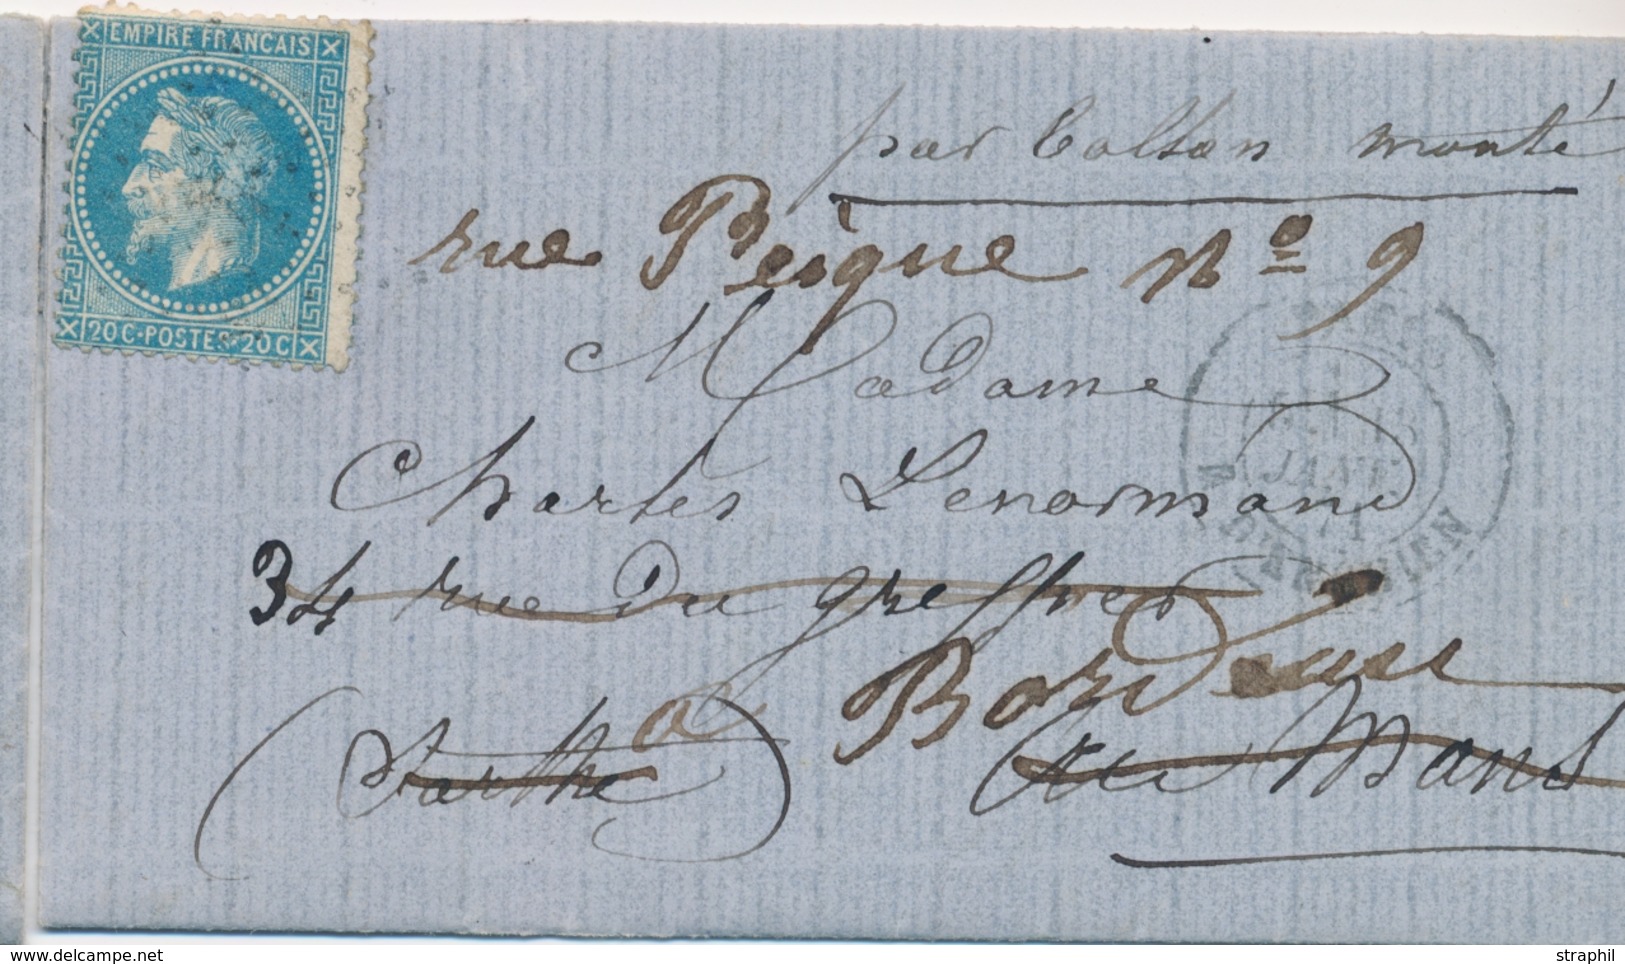 LAC BALLONS MONTES - LAC - La POSTE DE PARIS - LMM Du 15.1.71 - Etoile 4 Sur N°29 - CaD Rare D'ENGHIEN - Arrivée BORDEAU - Krieg 1870